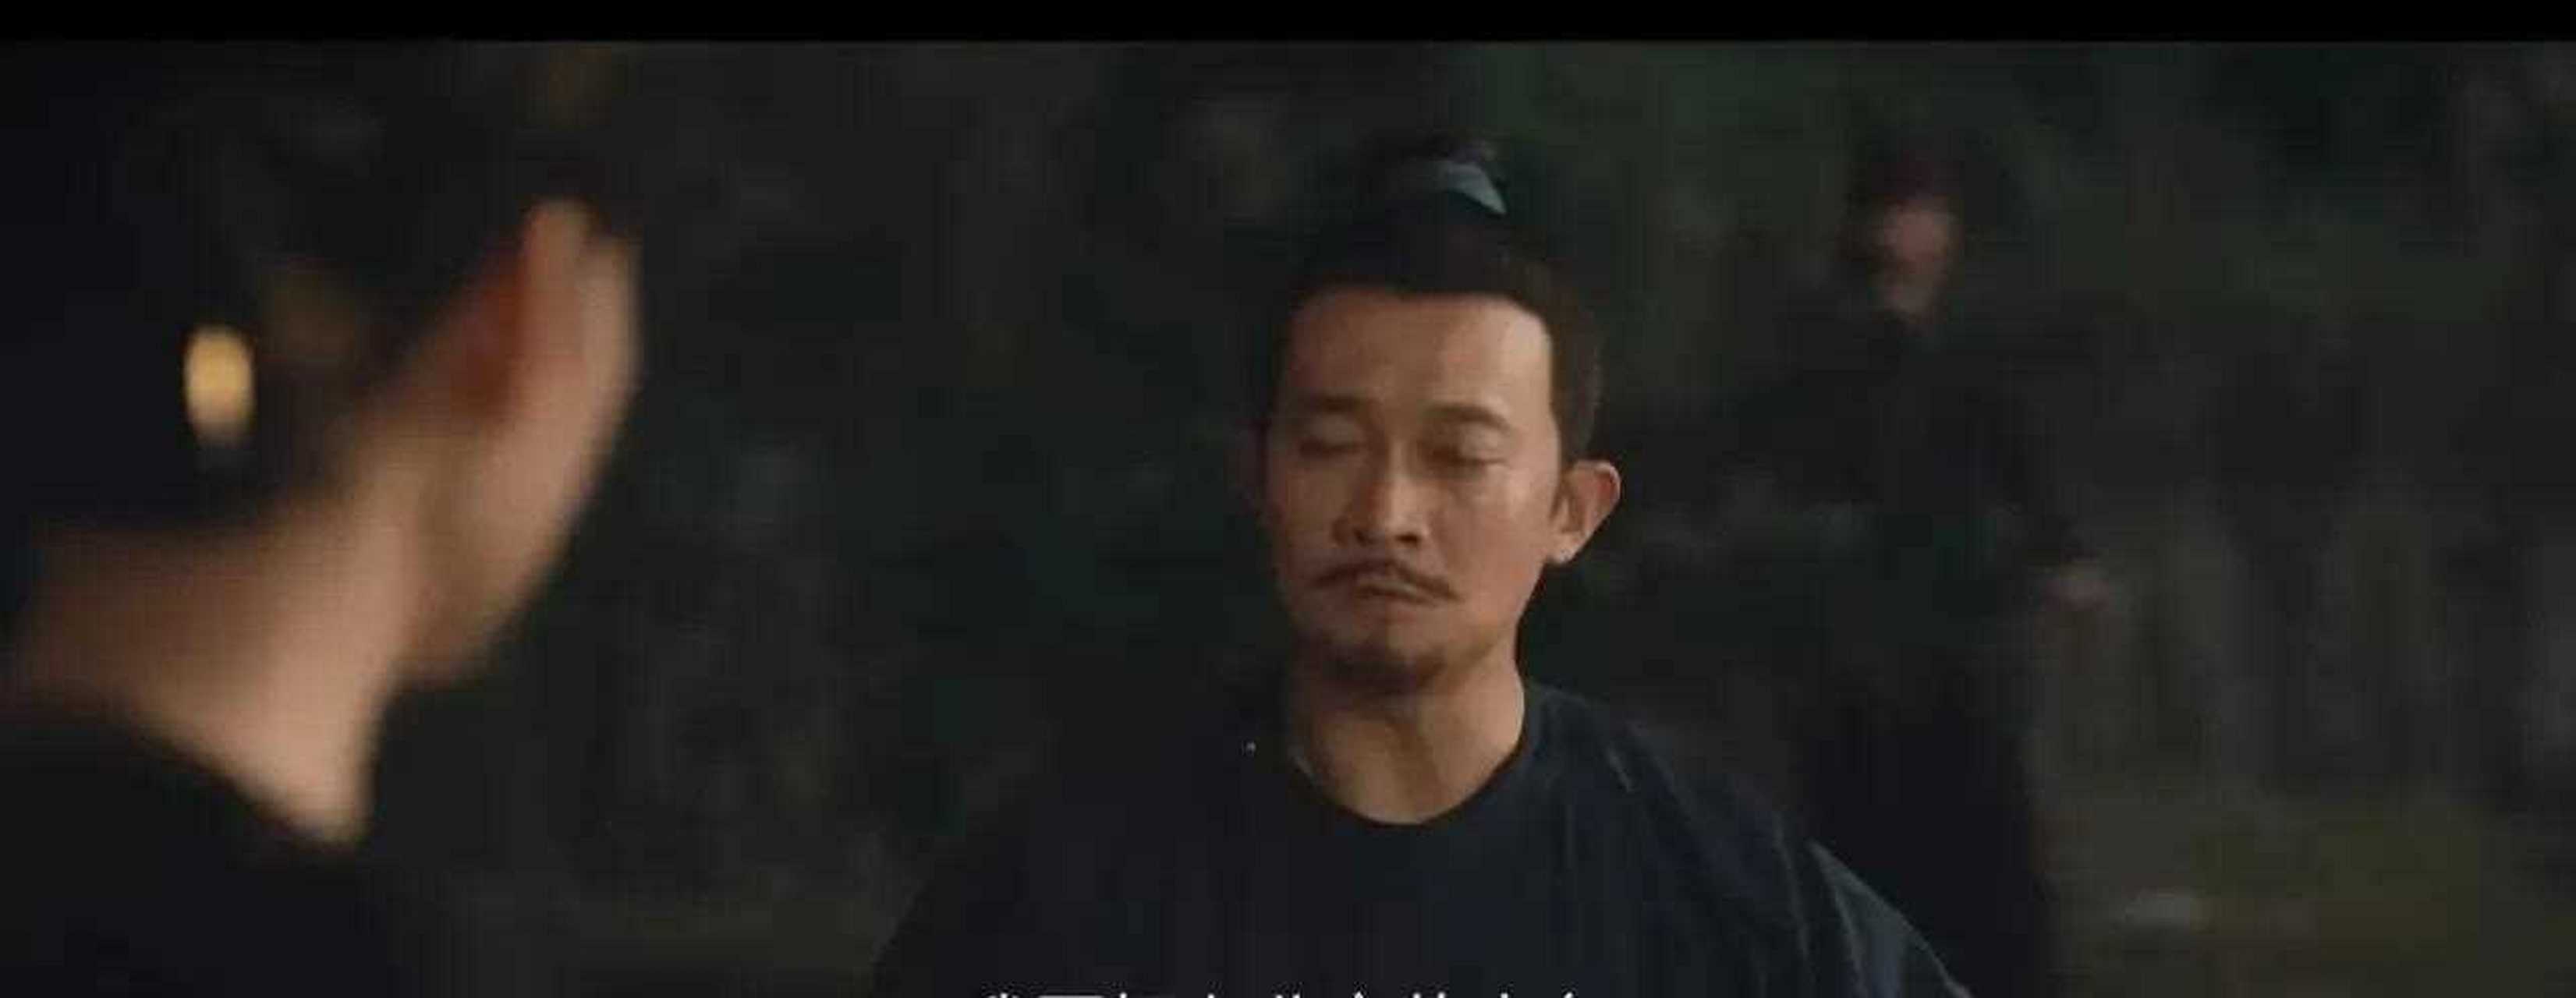 杨志刚拍《勇敢的心》时,里面有许多吻戏,虽然他不太喜欢,但是导演